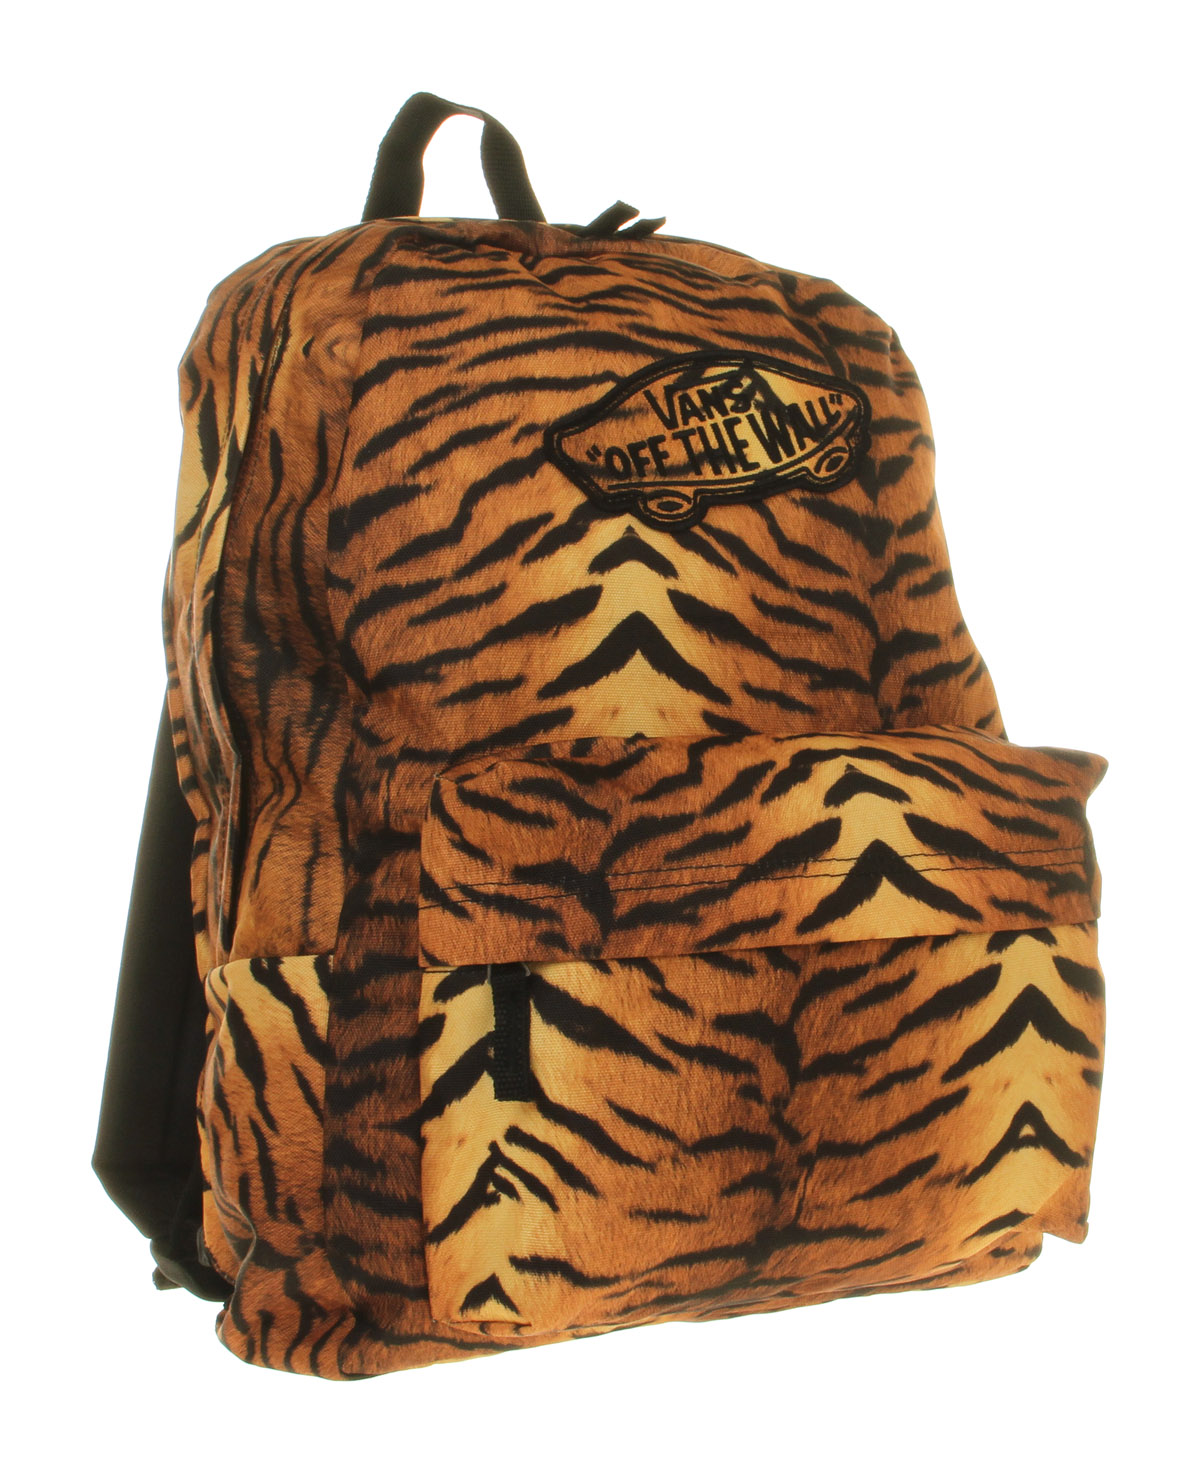 Vans Realm Backpack Tiger Print for Men - Lyst